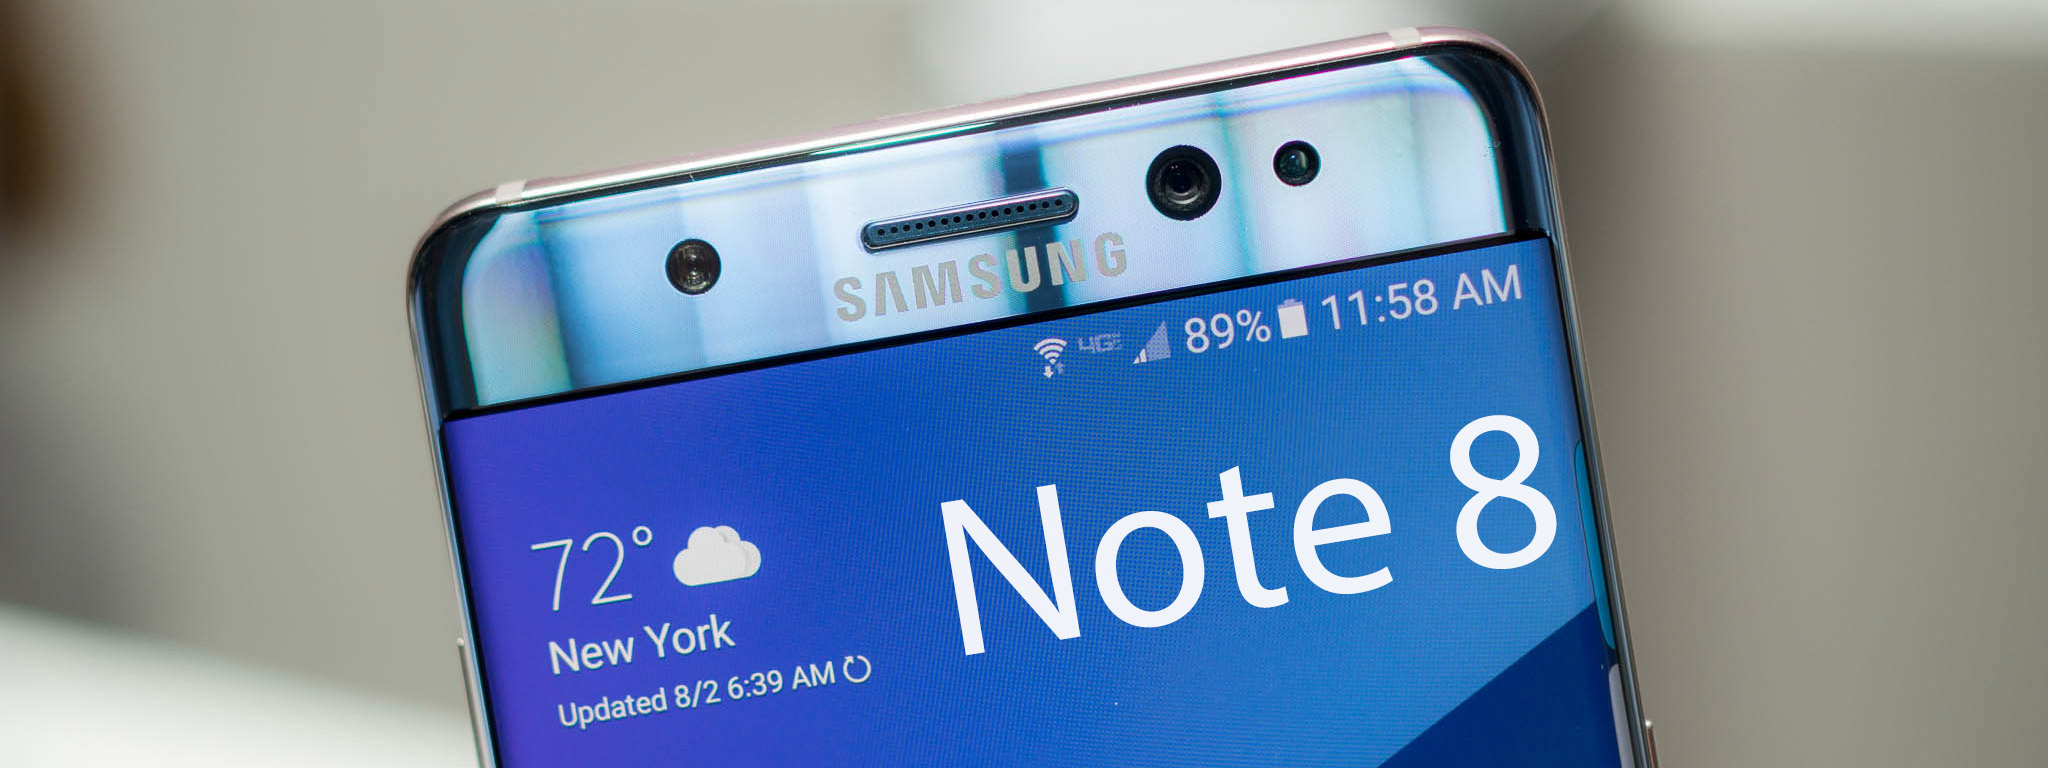 [evleaks] Galaxy Note 8 ra mắt trong tháng 9, giá 900$, camera kép, cảm biến vân tay vẫn sau lưng?